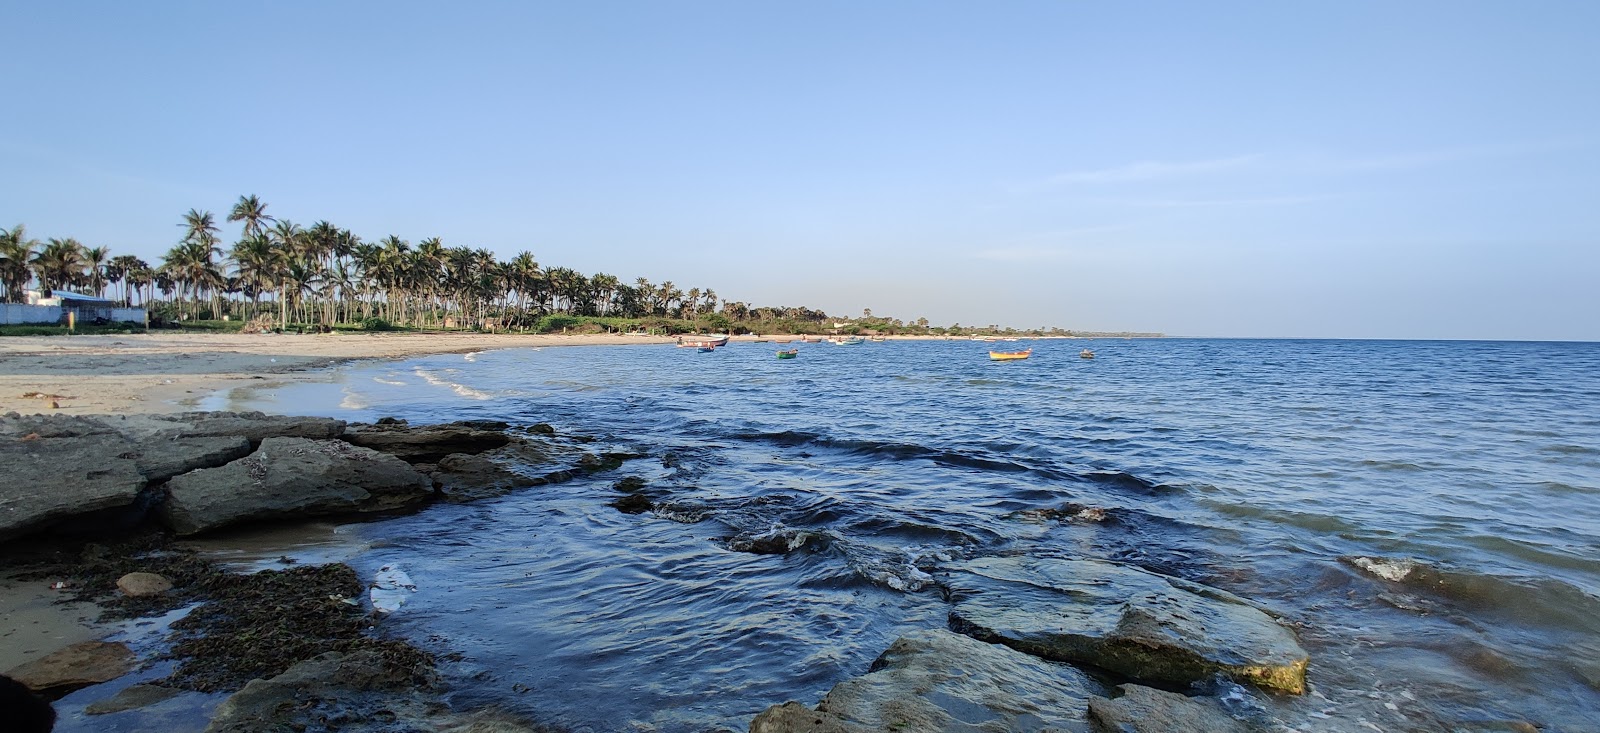 Pakkirapa Sea Park Beach'in fotoğrafı geniş plaj ile birlikte